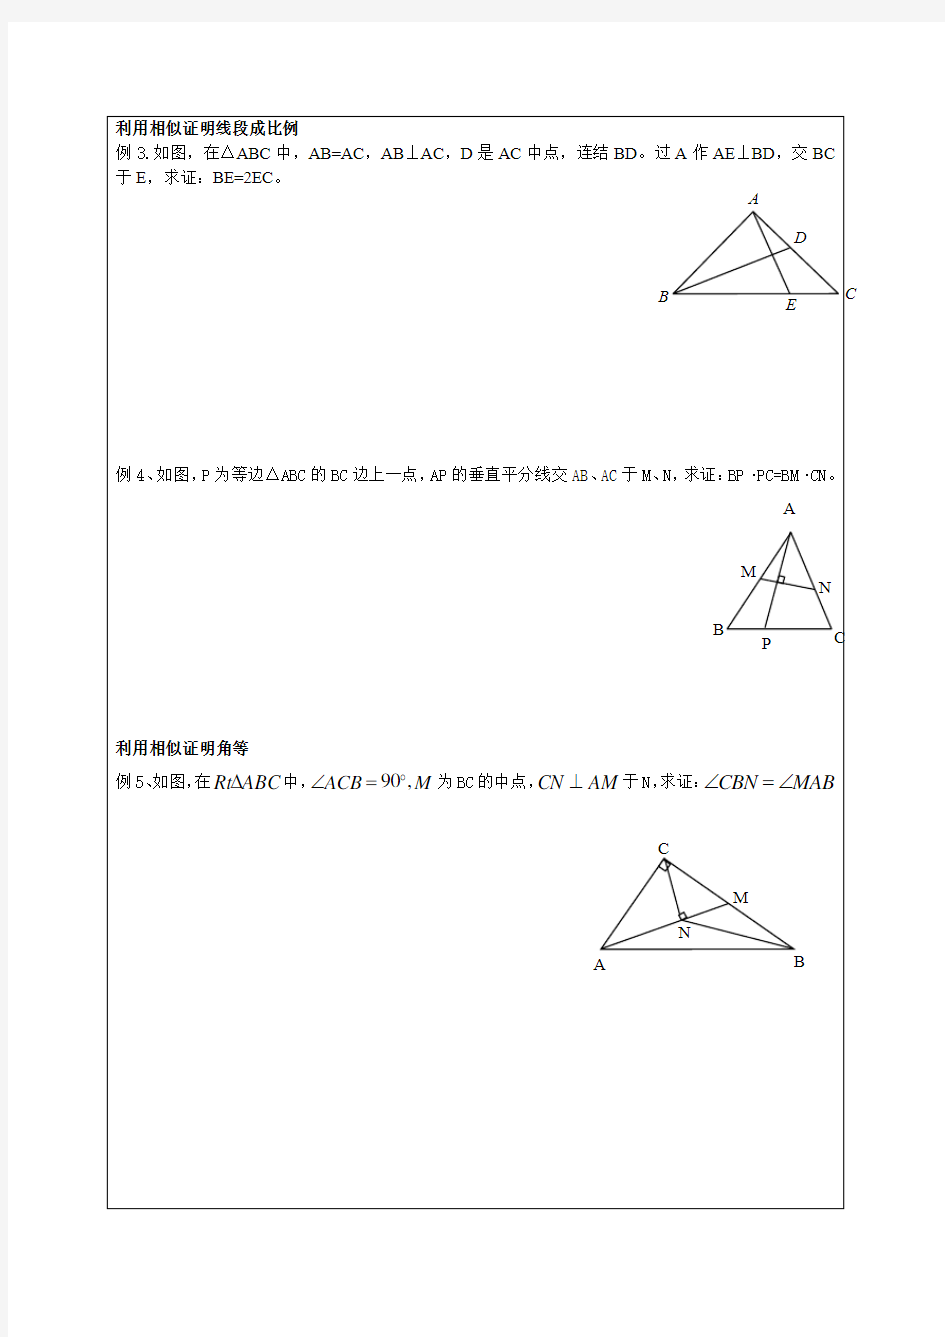 相似三角形的证明题型